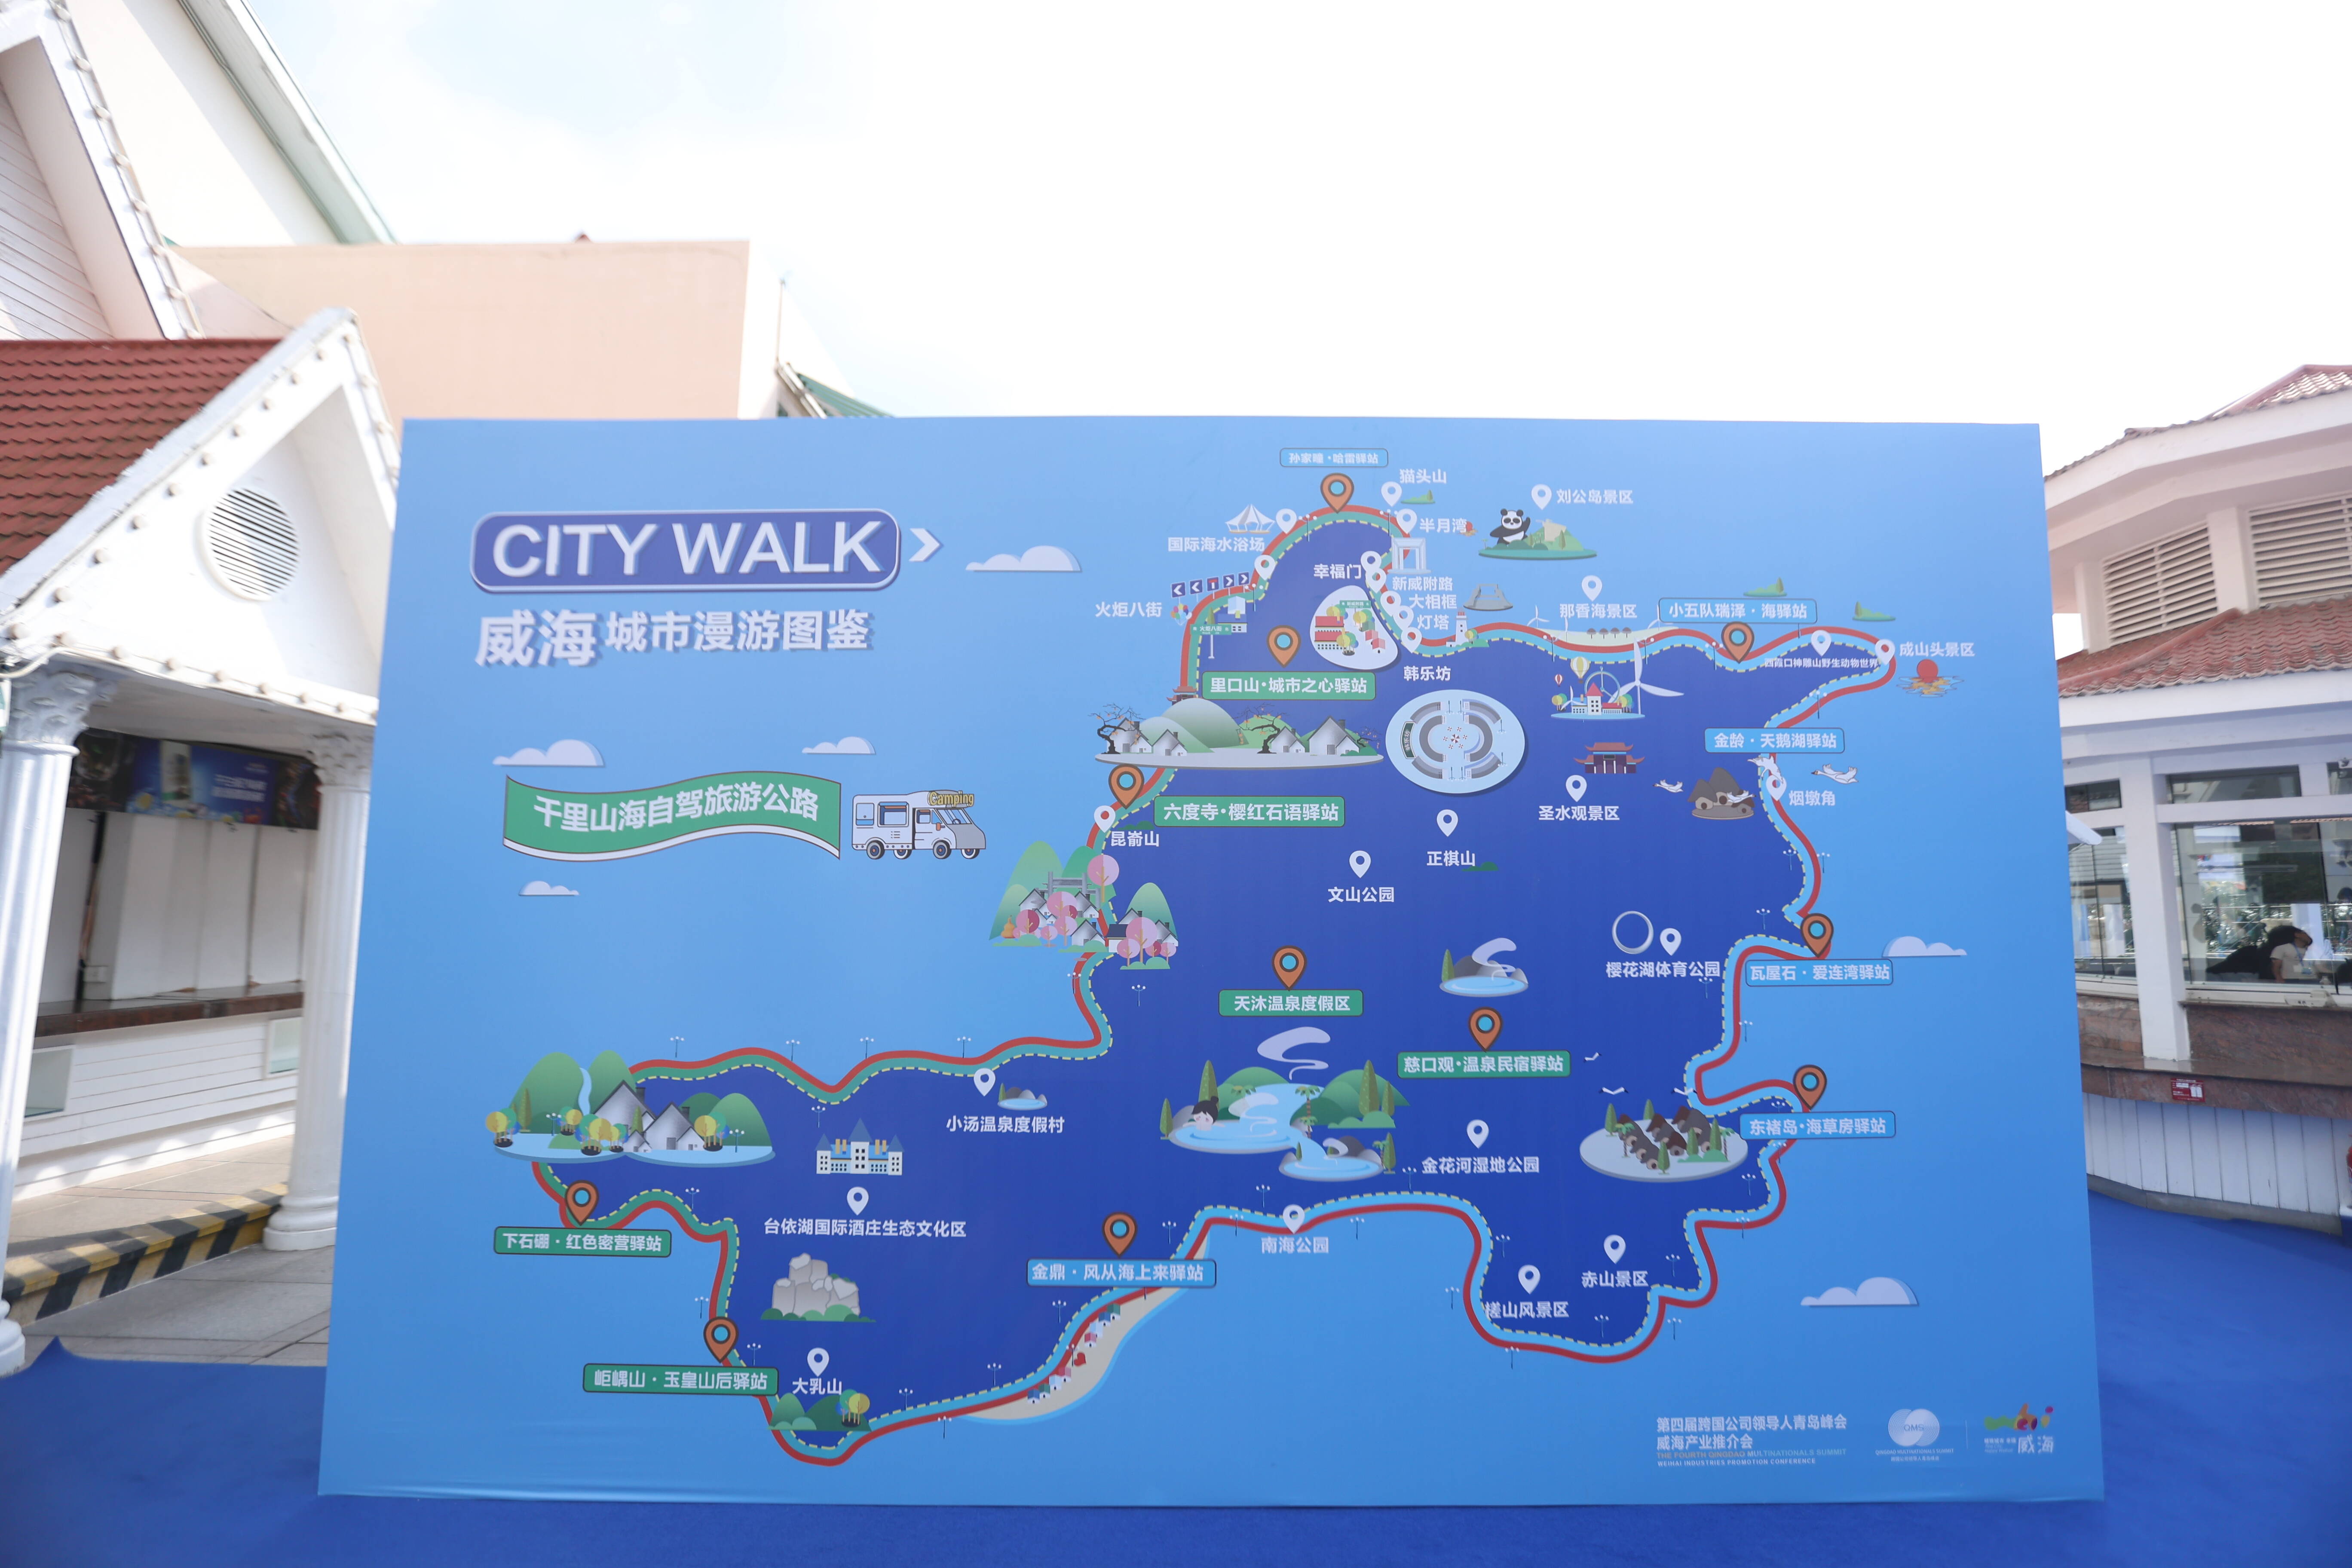 组图丨威海专属“City walk城市漫游图鉴”亮点多